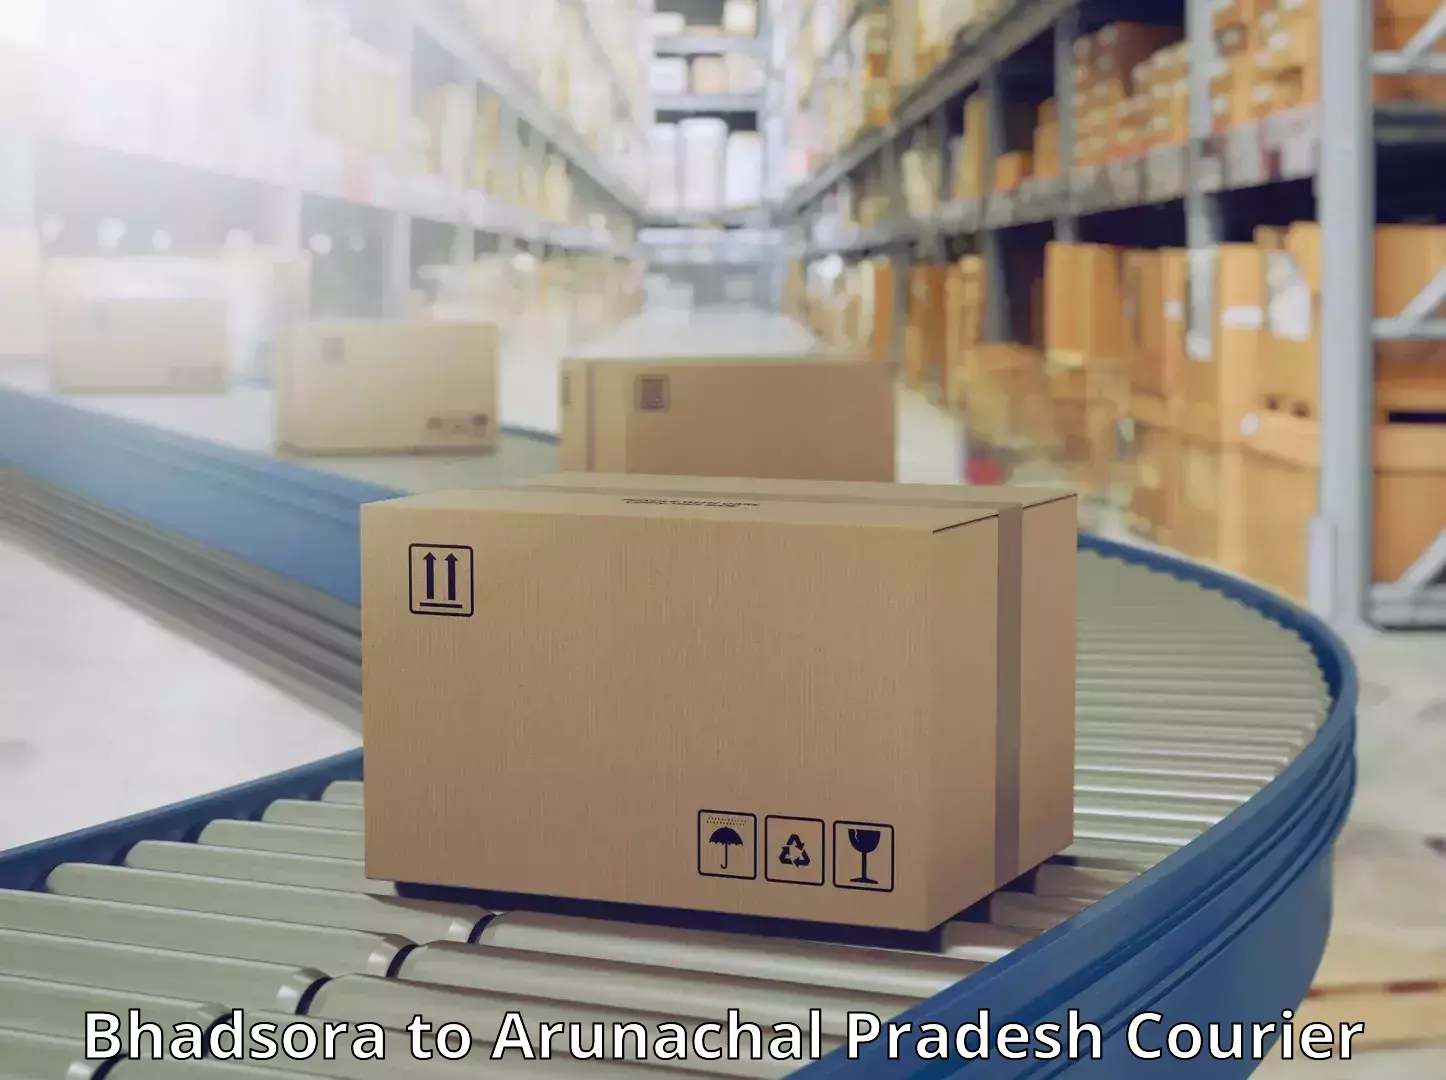 Modern courier technology Bhadsora to Jairampur